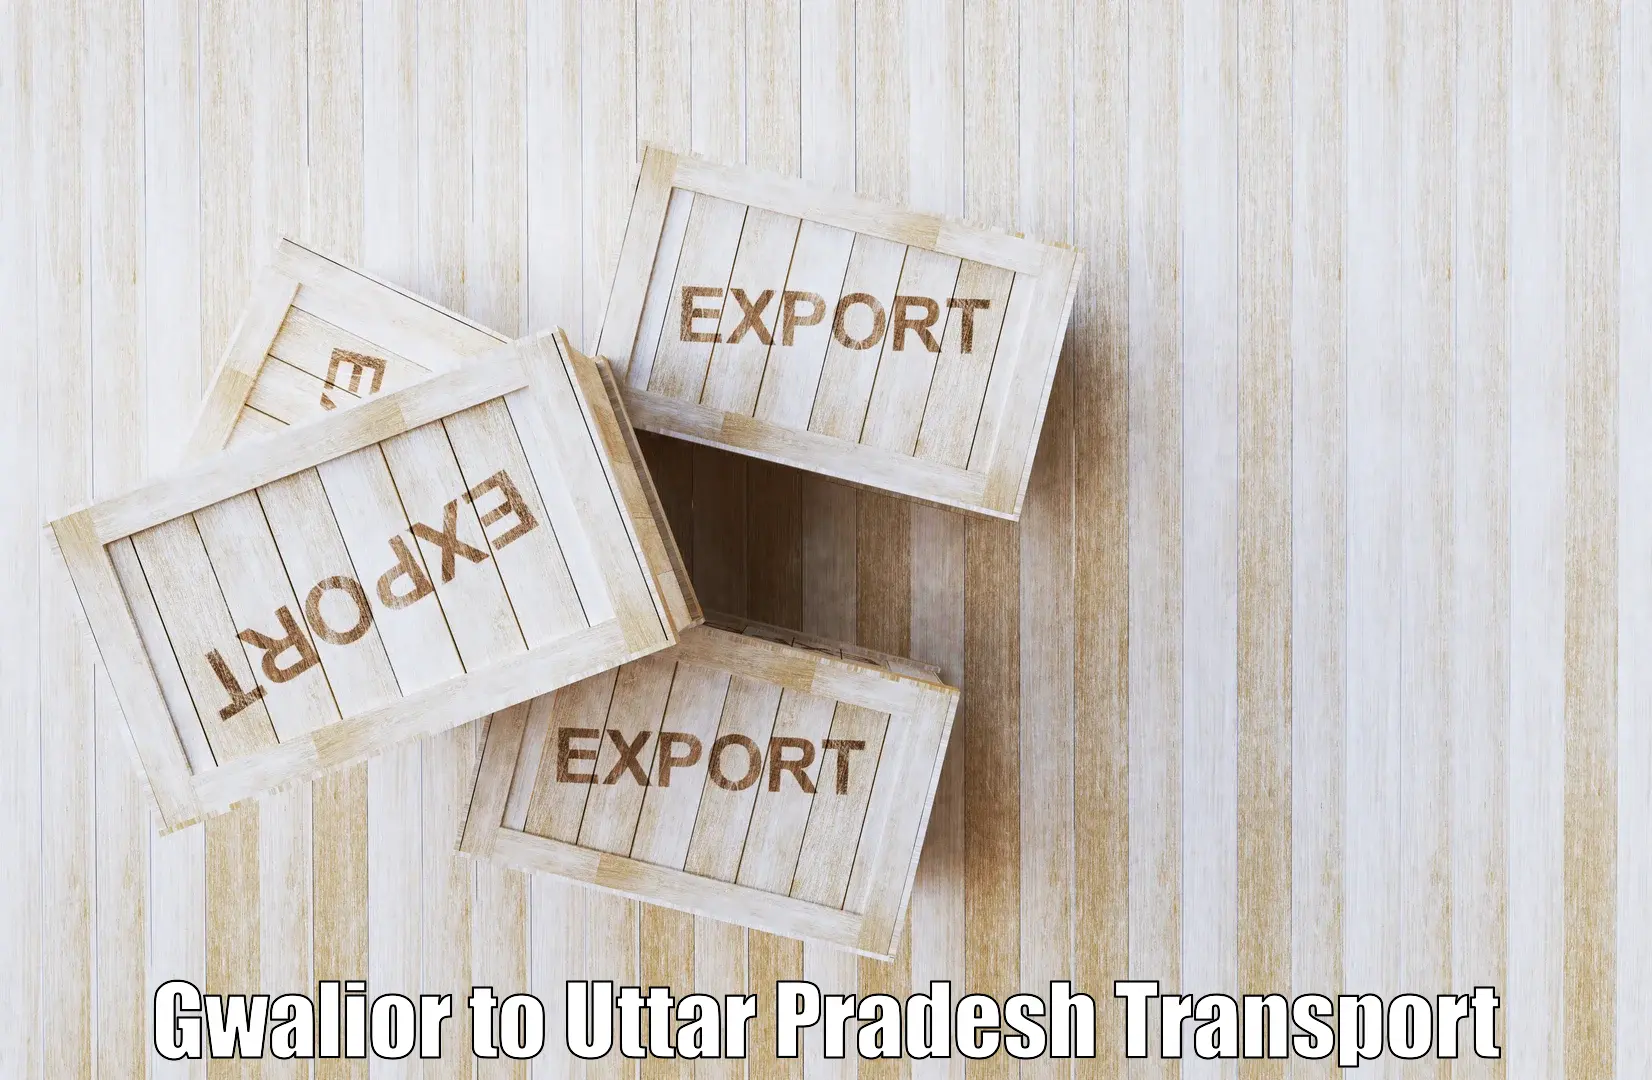 Interstate transport services Gwalior to Uttar Pradesh